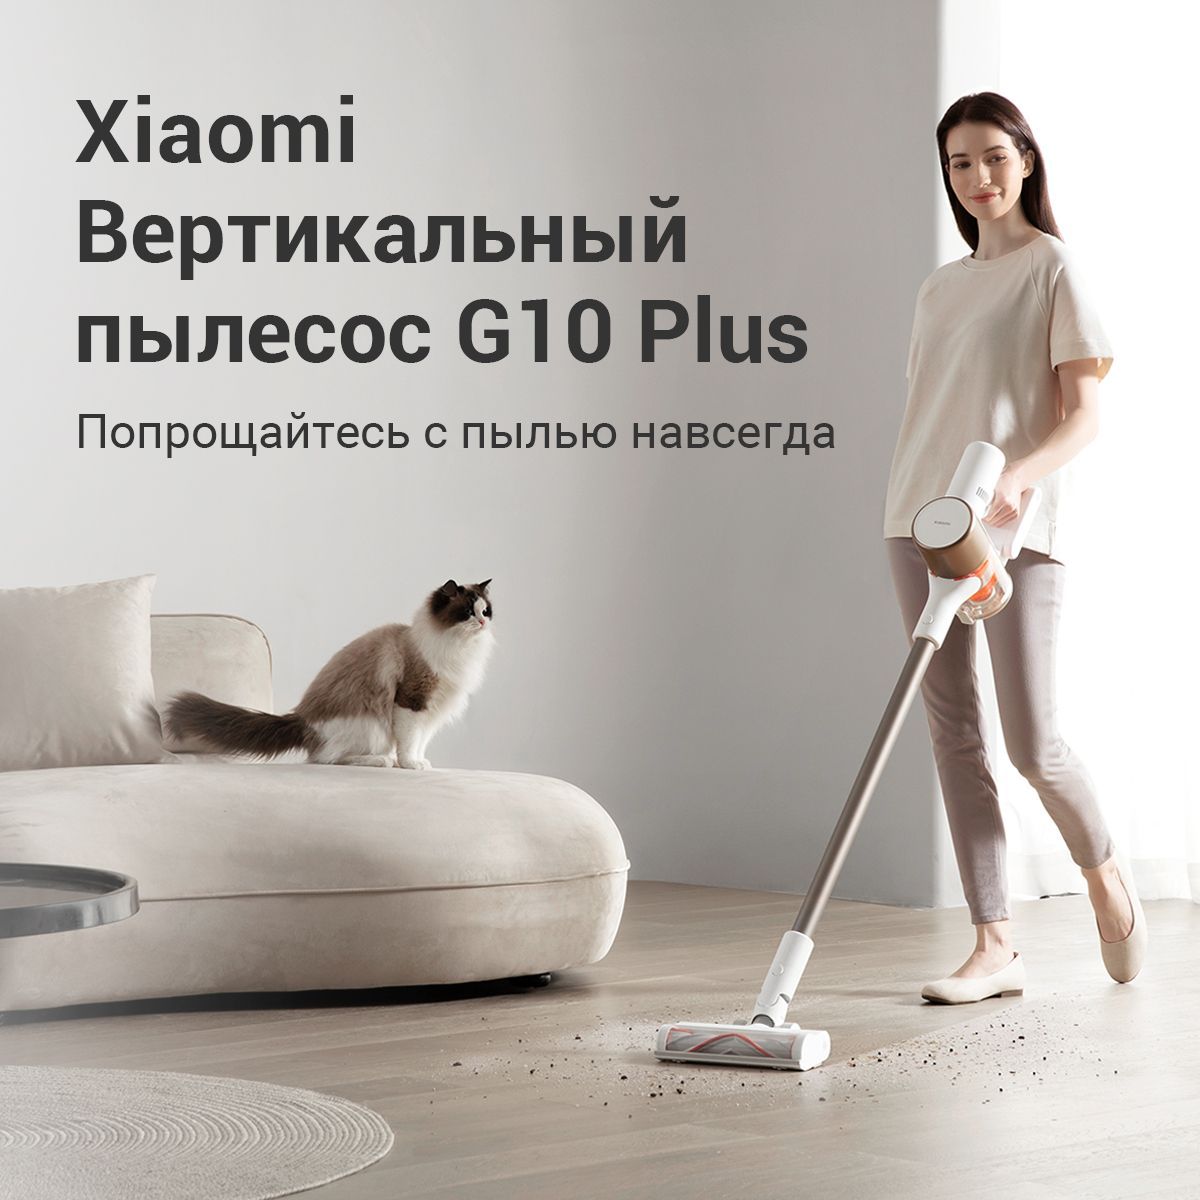 Xiaomi vacuum cleaner g10 plus b207. Сравнение вертикальных пылесосов. Xiaomi Vacuum Cleaner g10 Plus eu b207 купить.